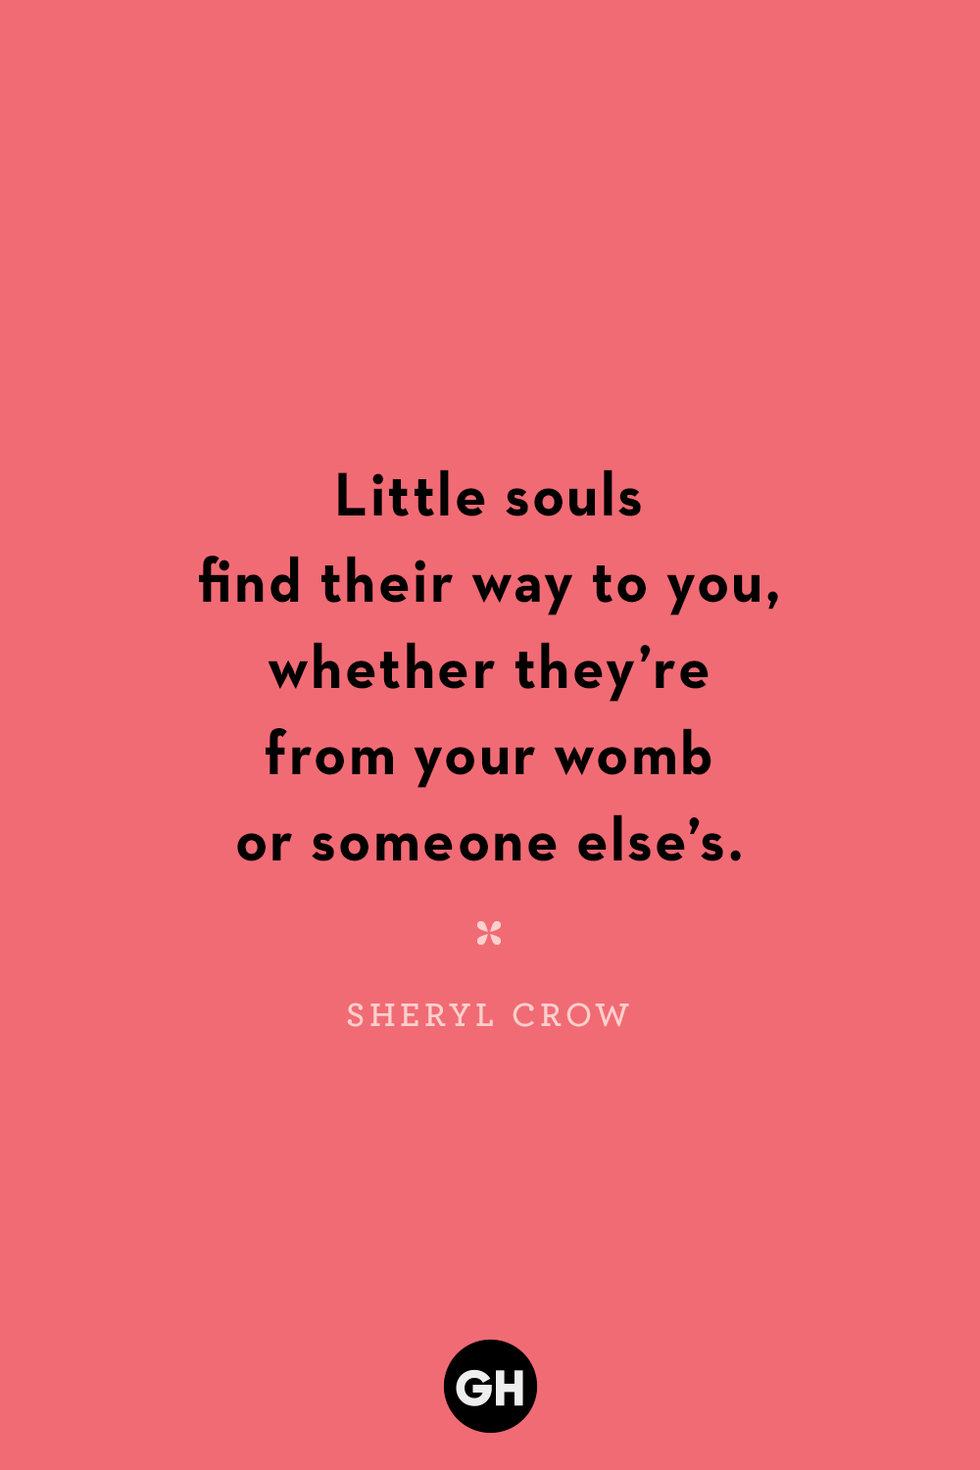 stepmom quote by sheryl crow